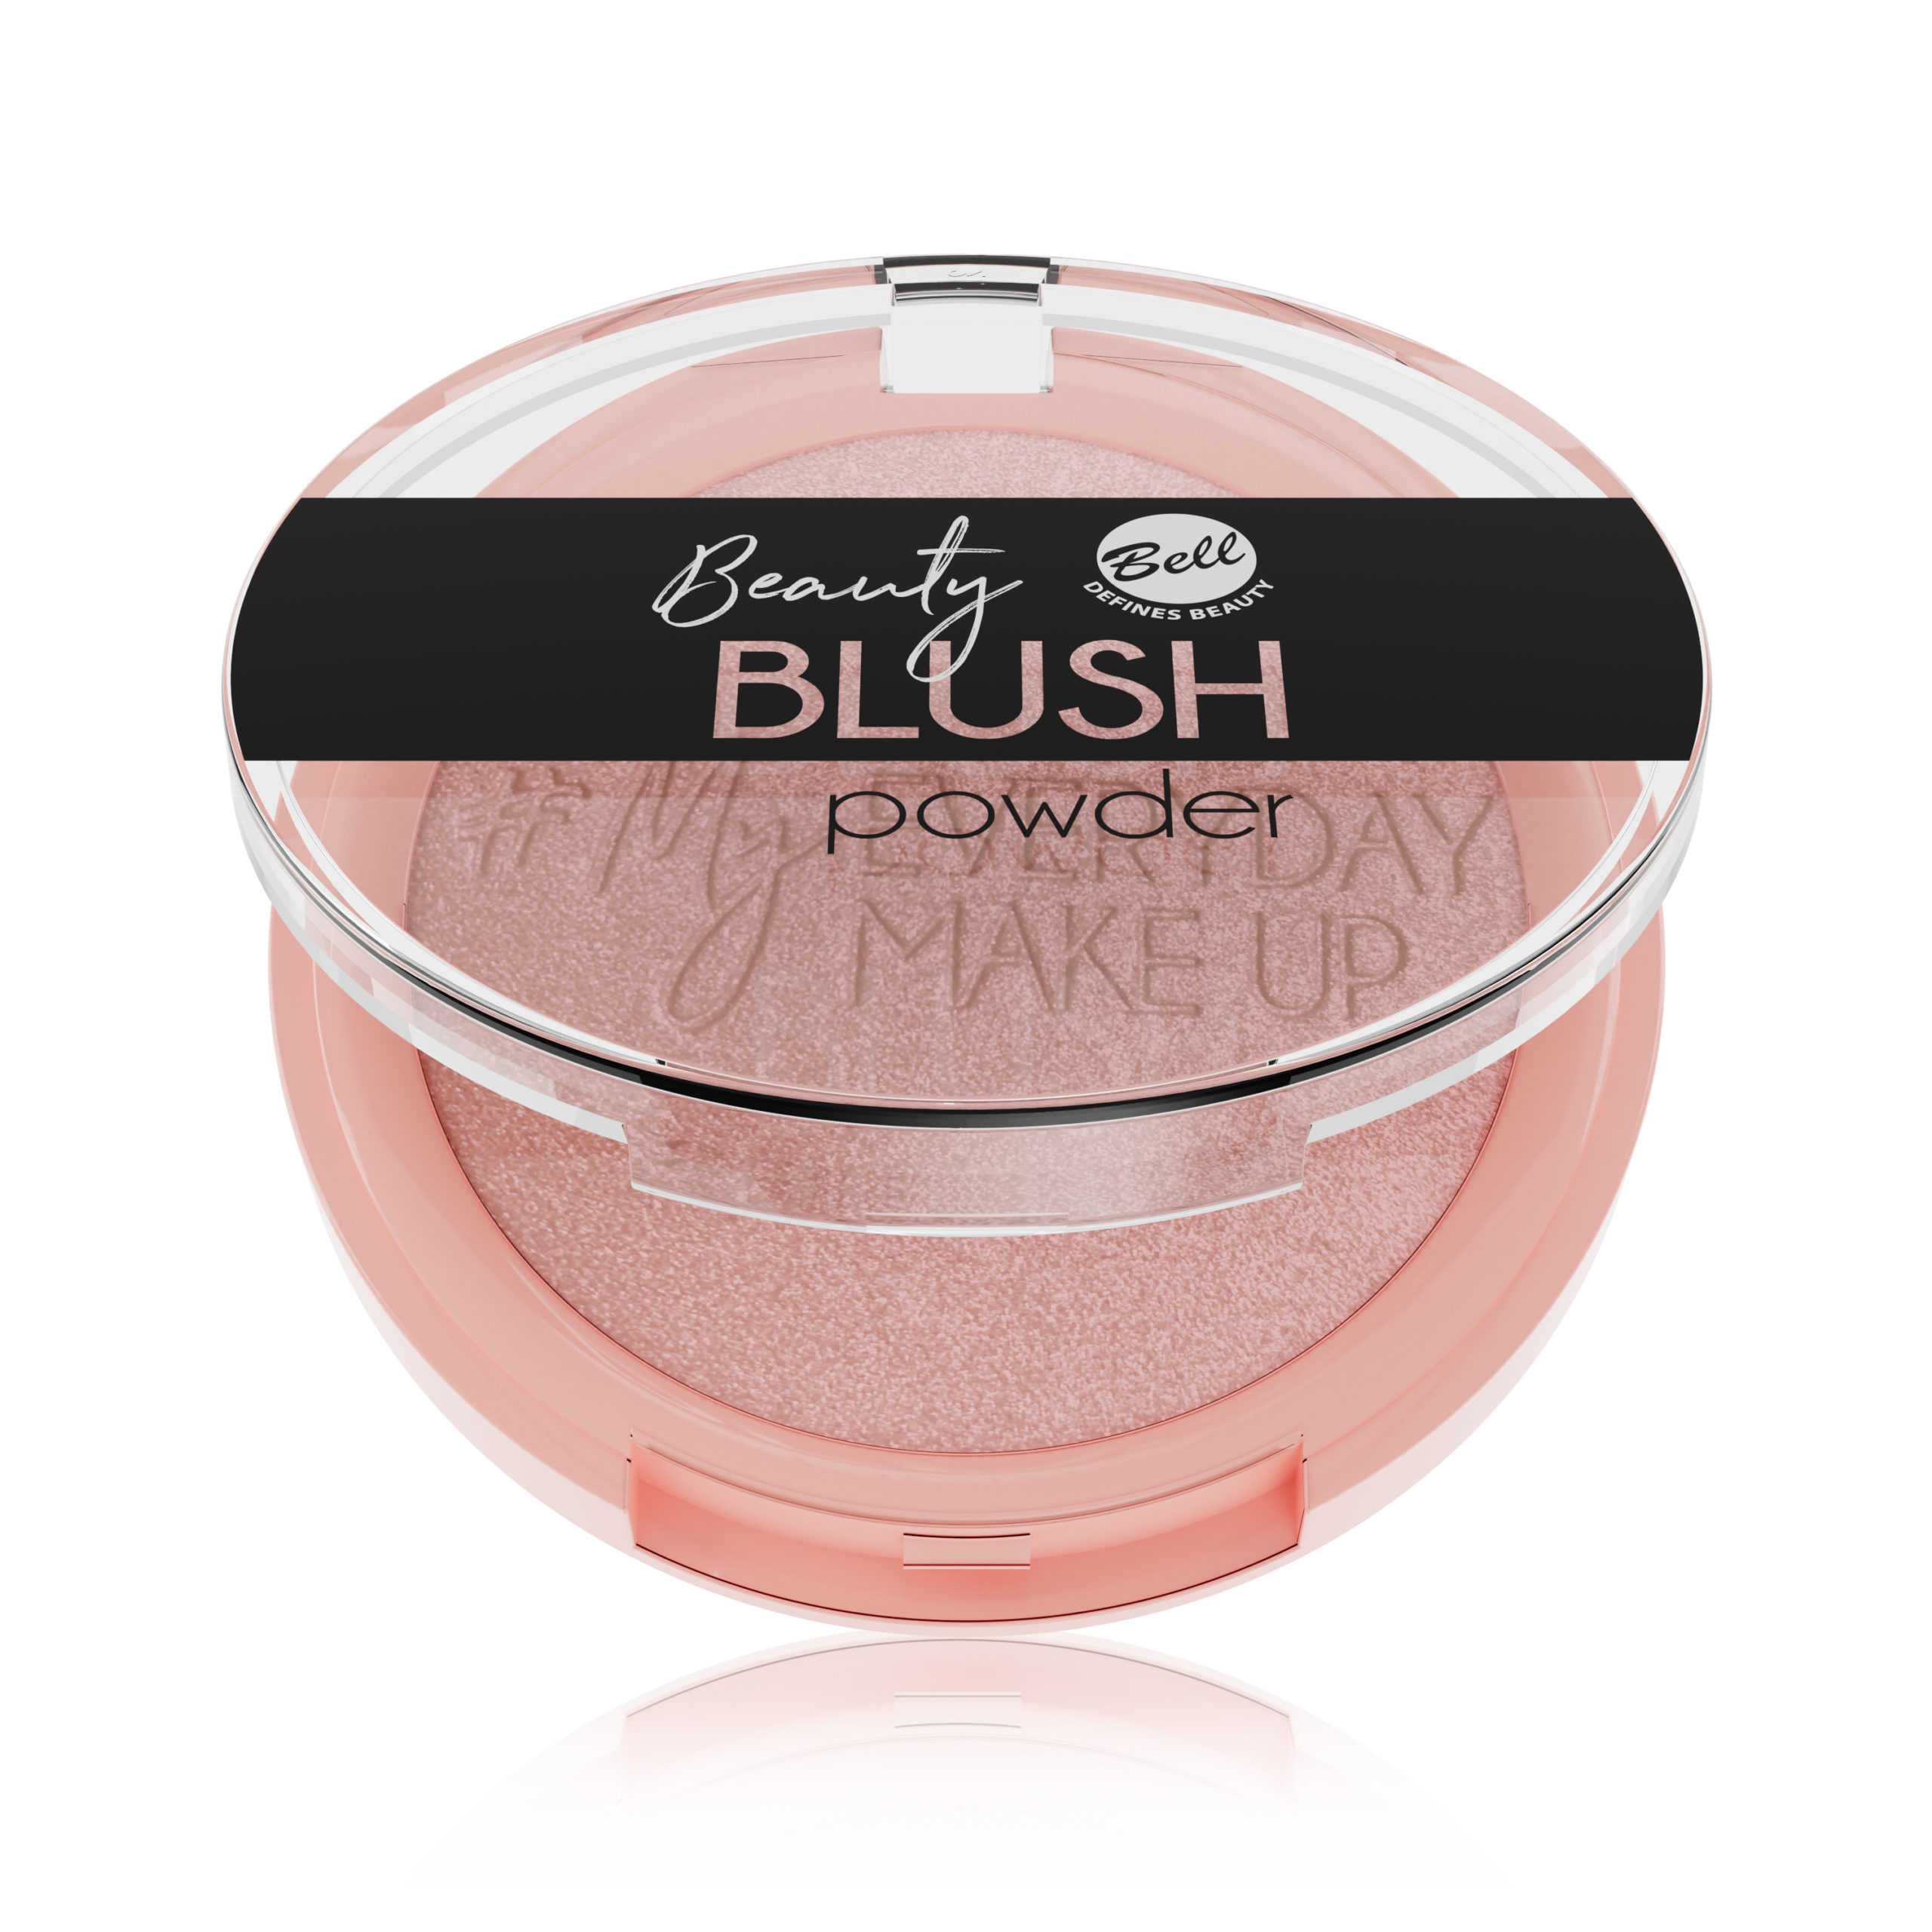 Beauty Blush Powder